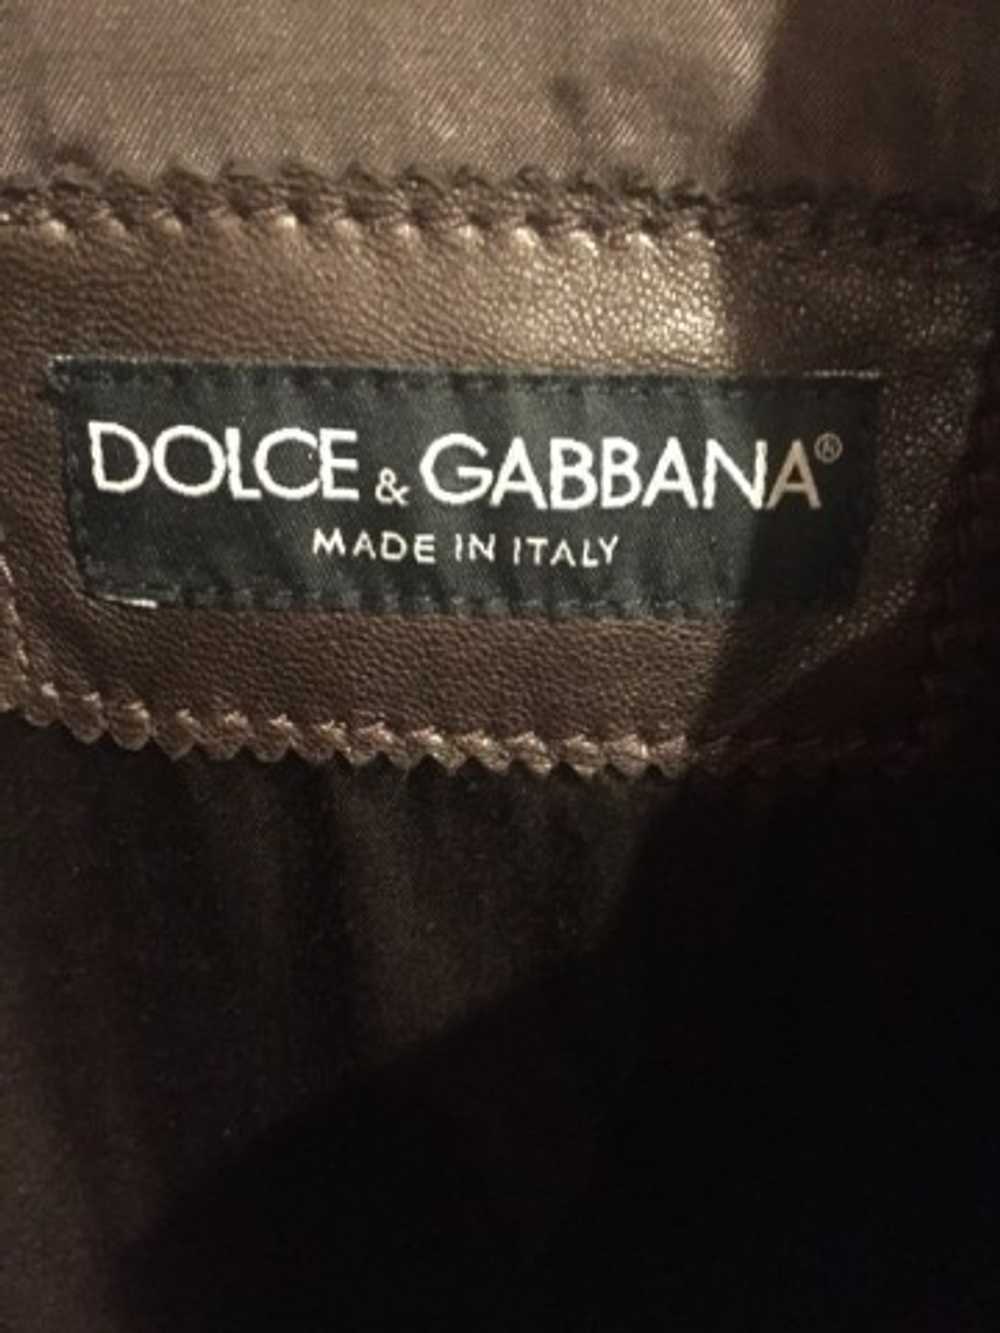 Dolce & Gabbana Chocolate Leather Jacket - image 3